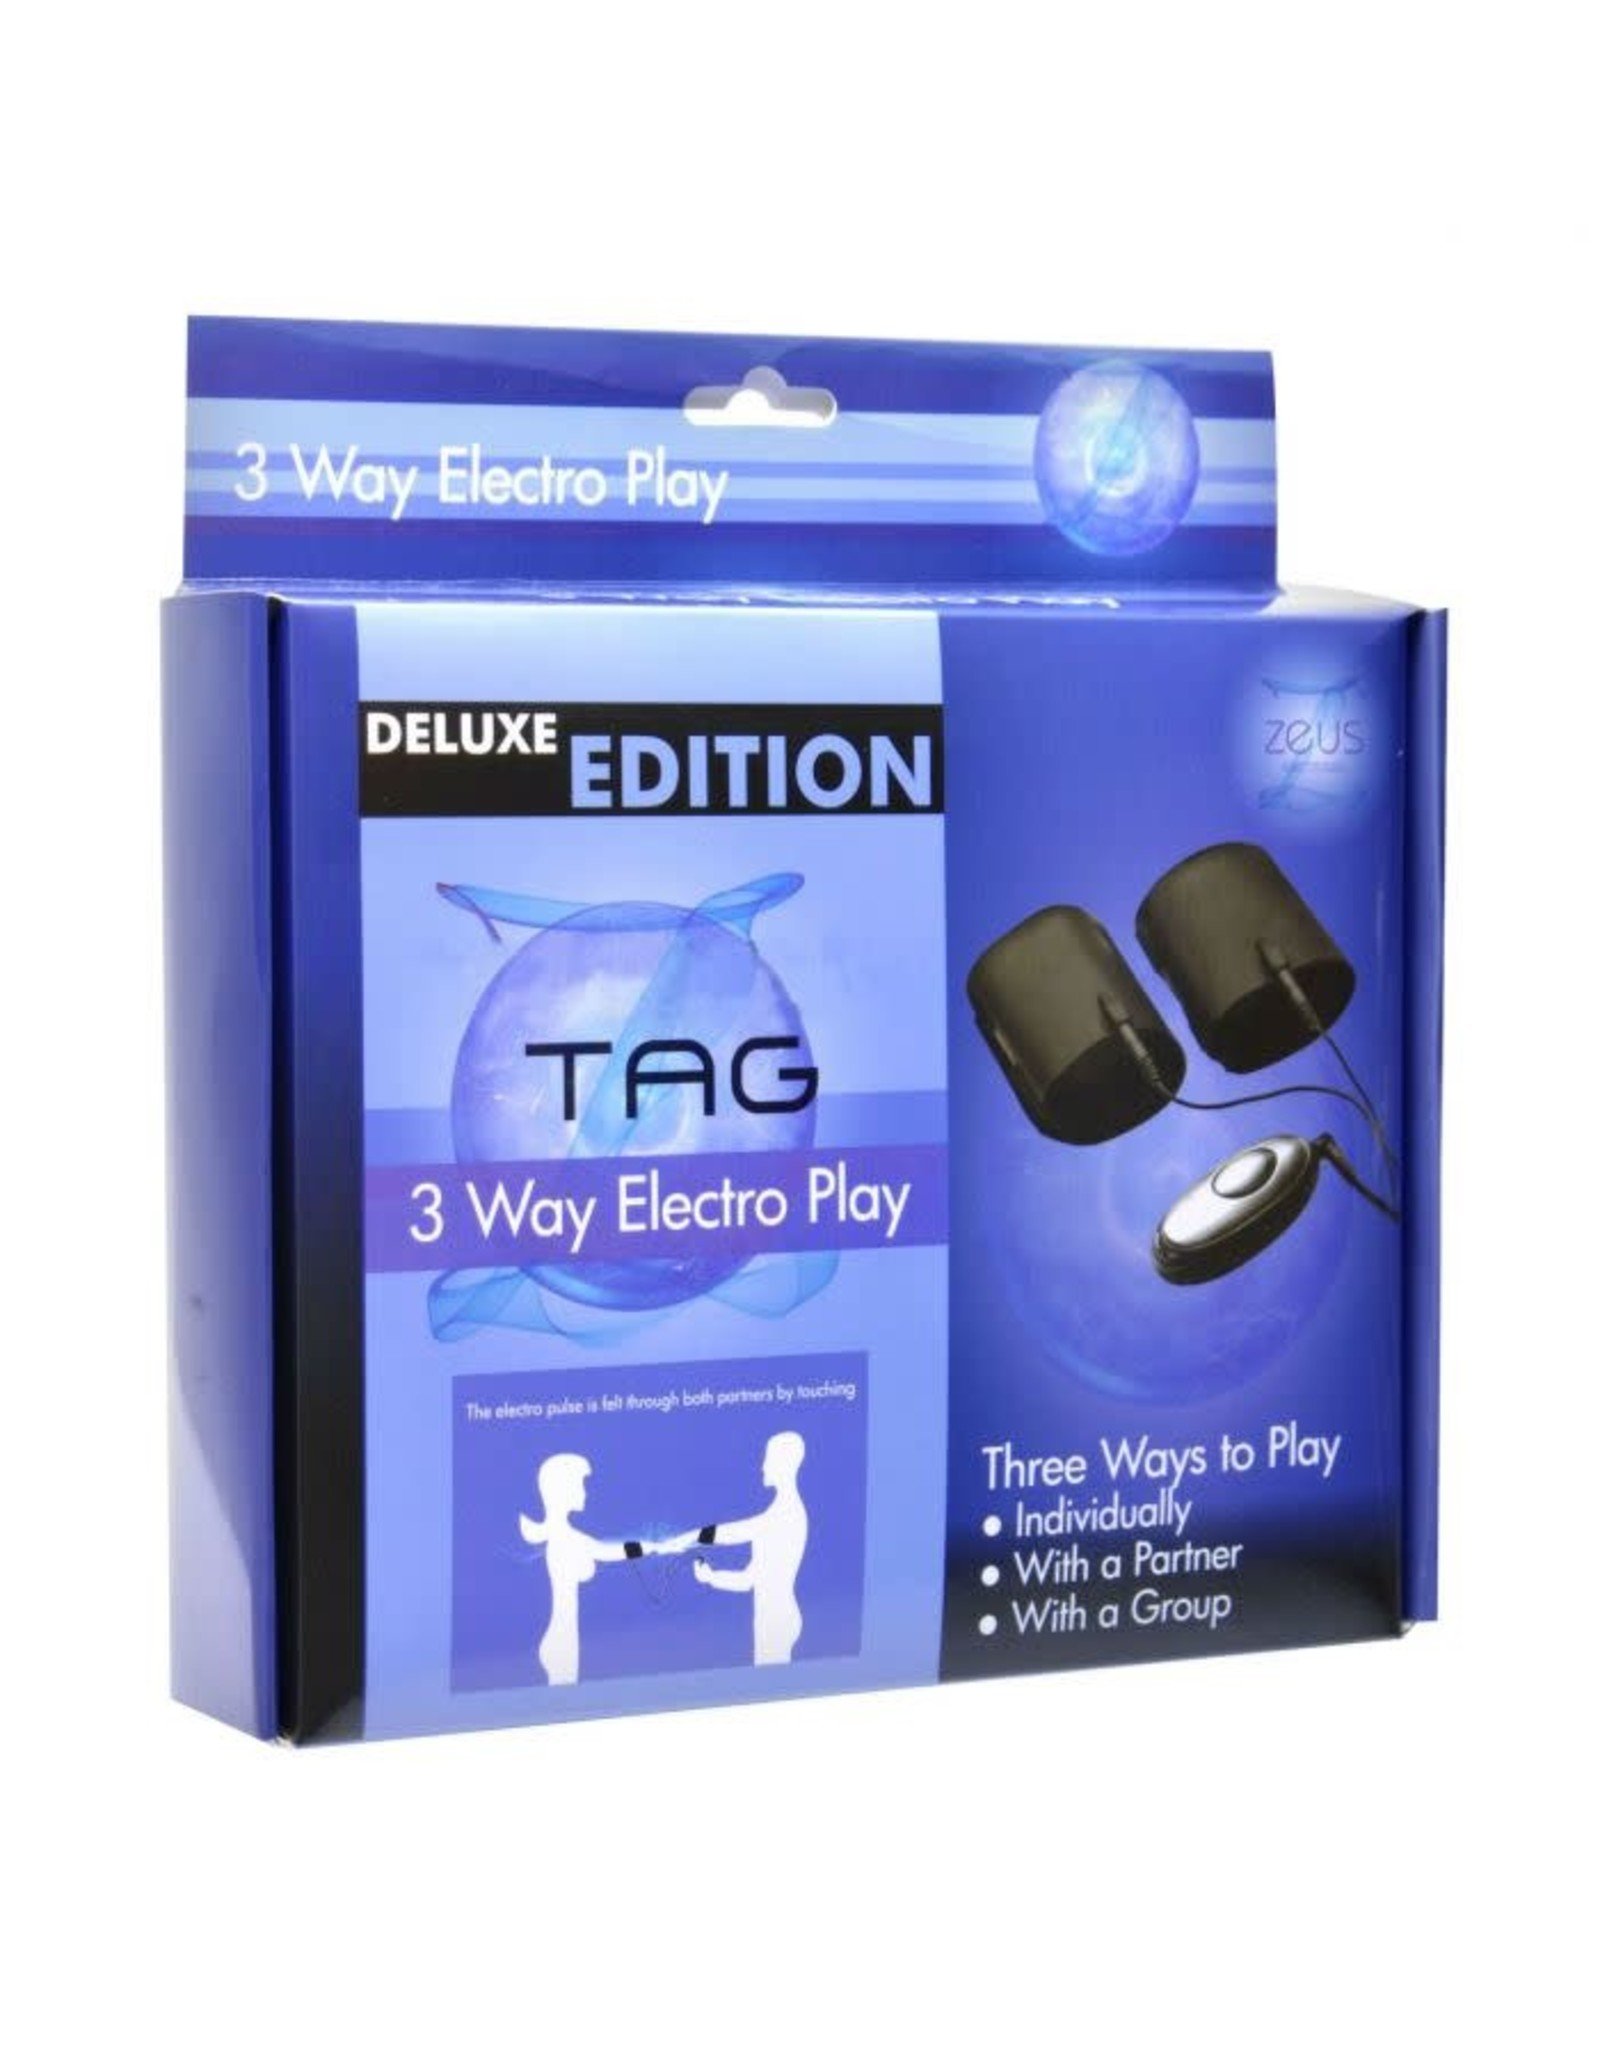 Taser Tag - 3 Way Electro Play